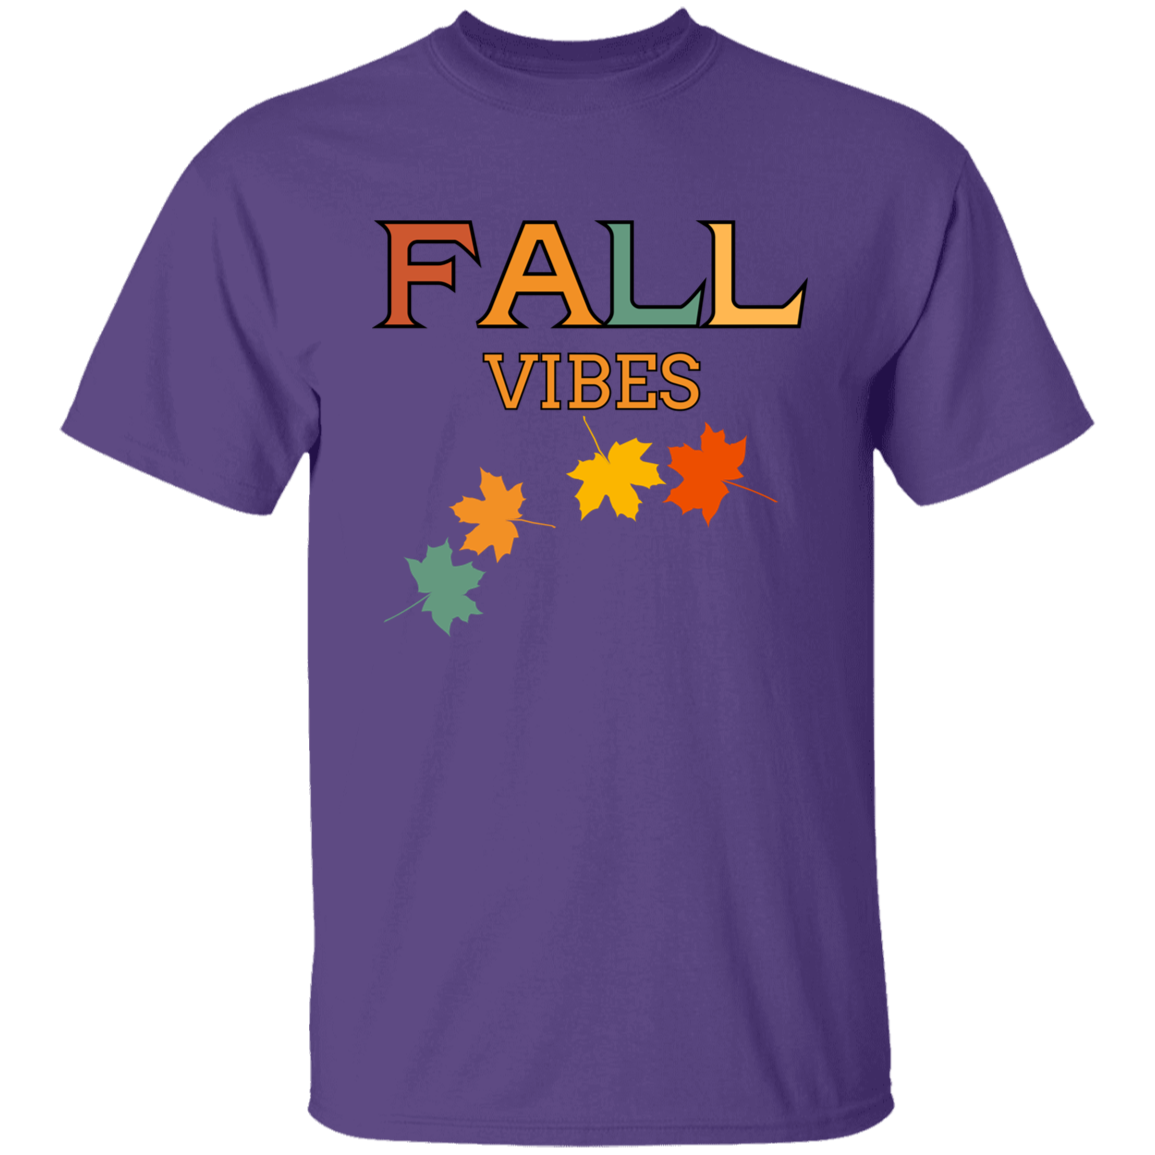 Fall Vibes - Boy's, Teen, Youth T-Shirt